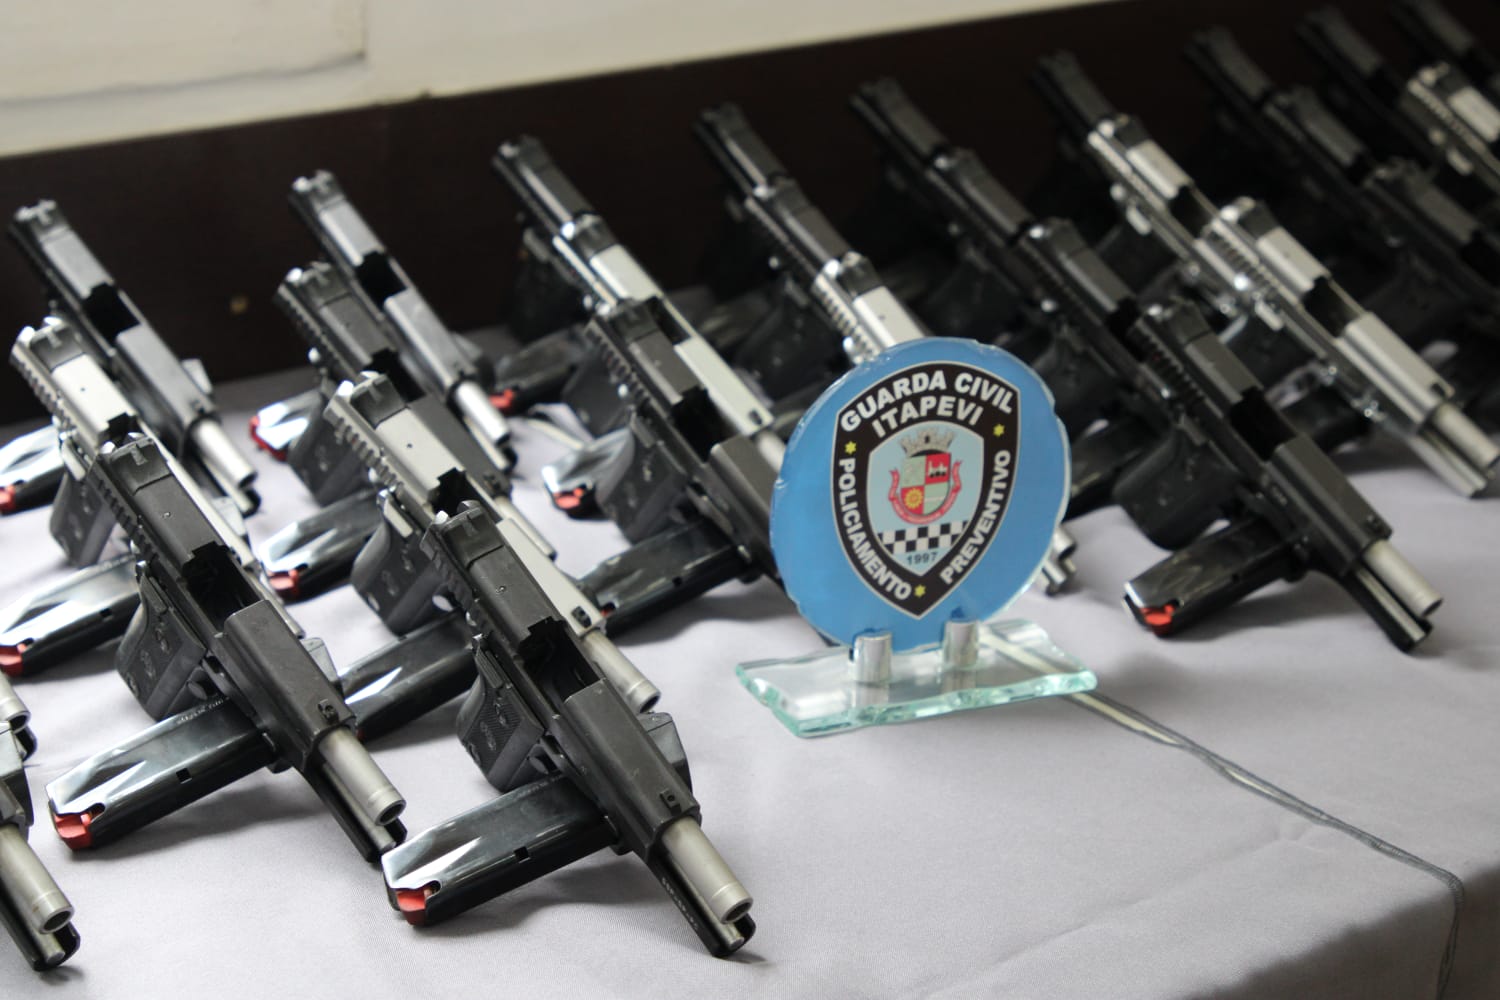 SSP firma parceria com Itapevi para melhorias na segurança e doa 100 pistolas à GCM do município